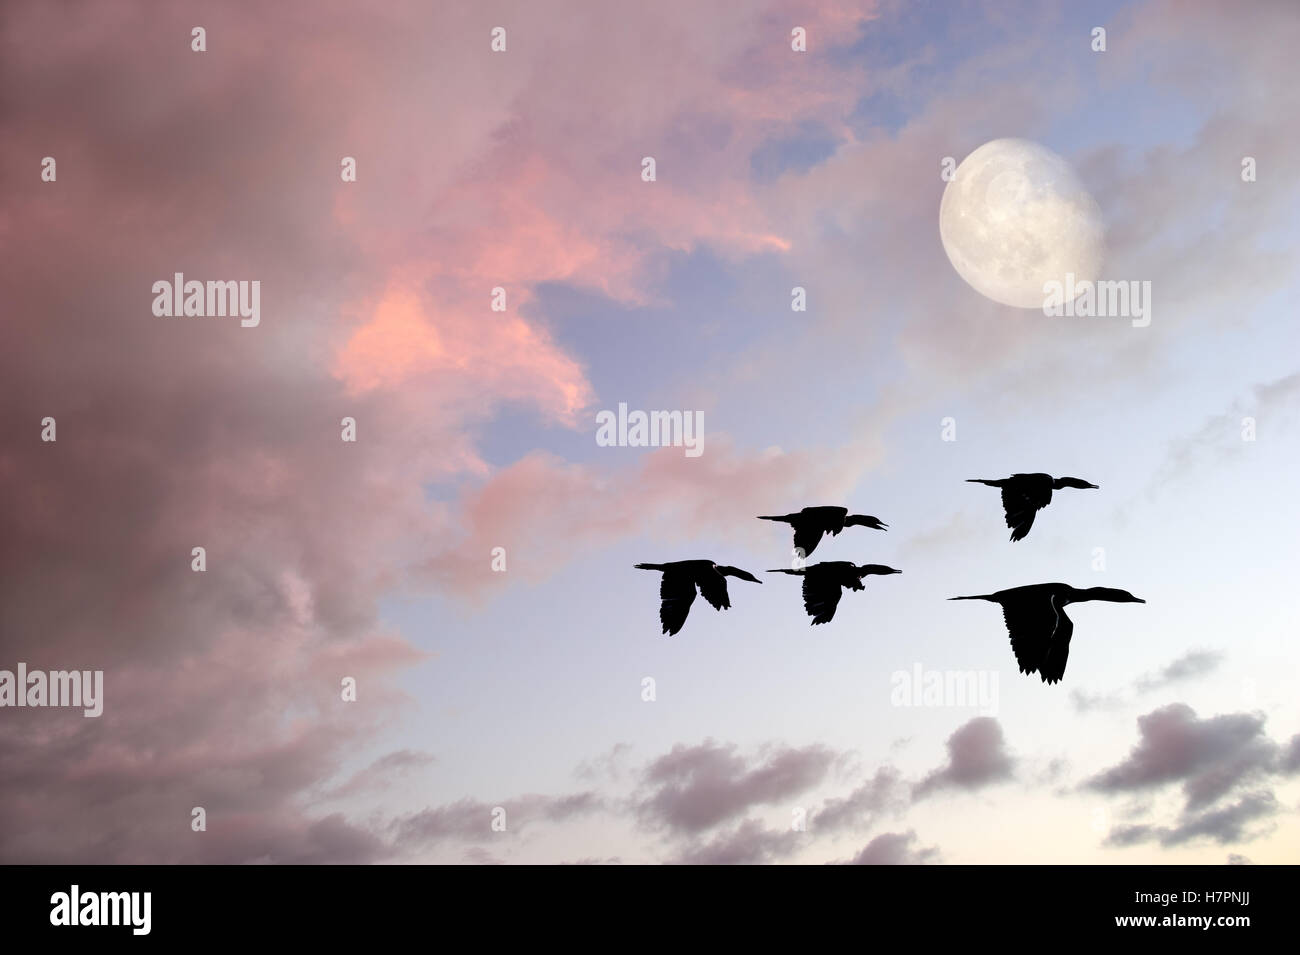 Uccelli luna è uno stormo di uccelli in volo tra nuvole rosa come la luna piena sorge nel cielo. Foto Stock